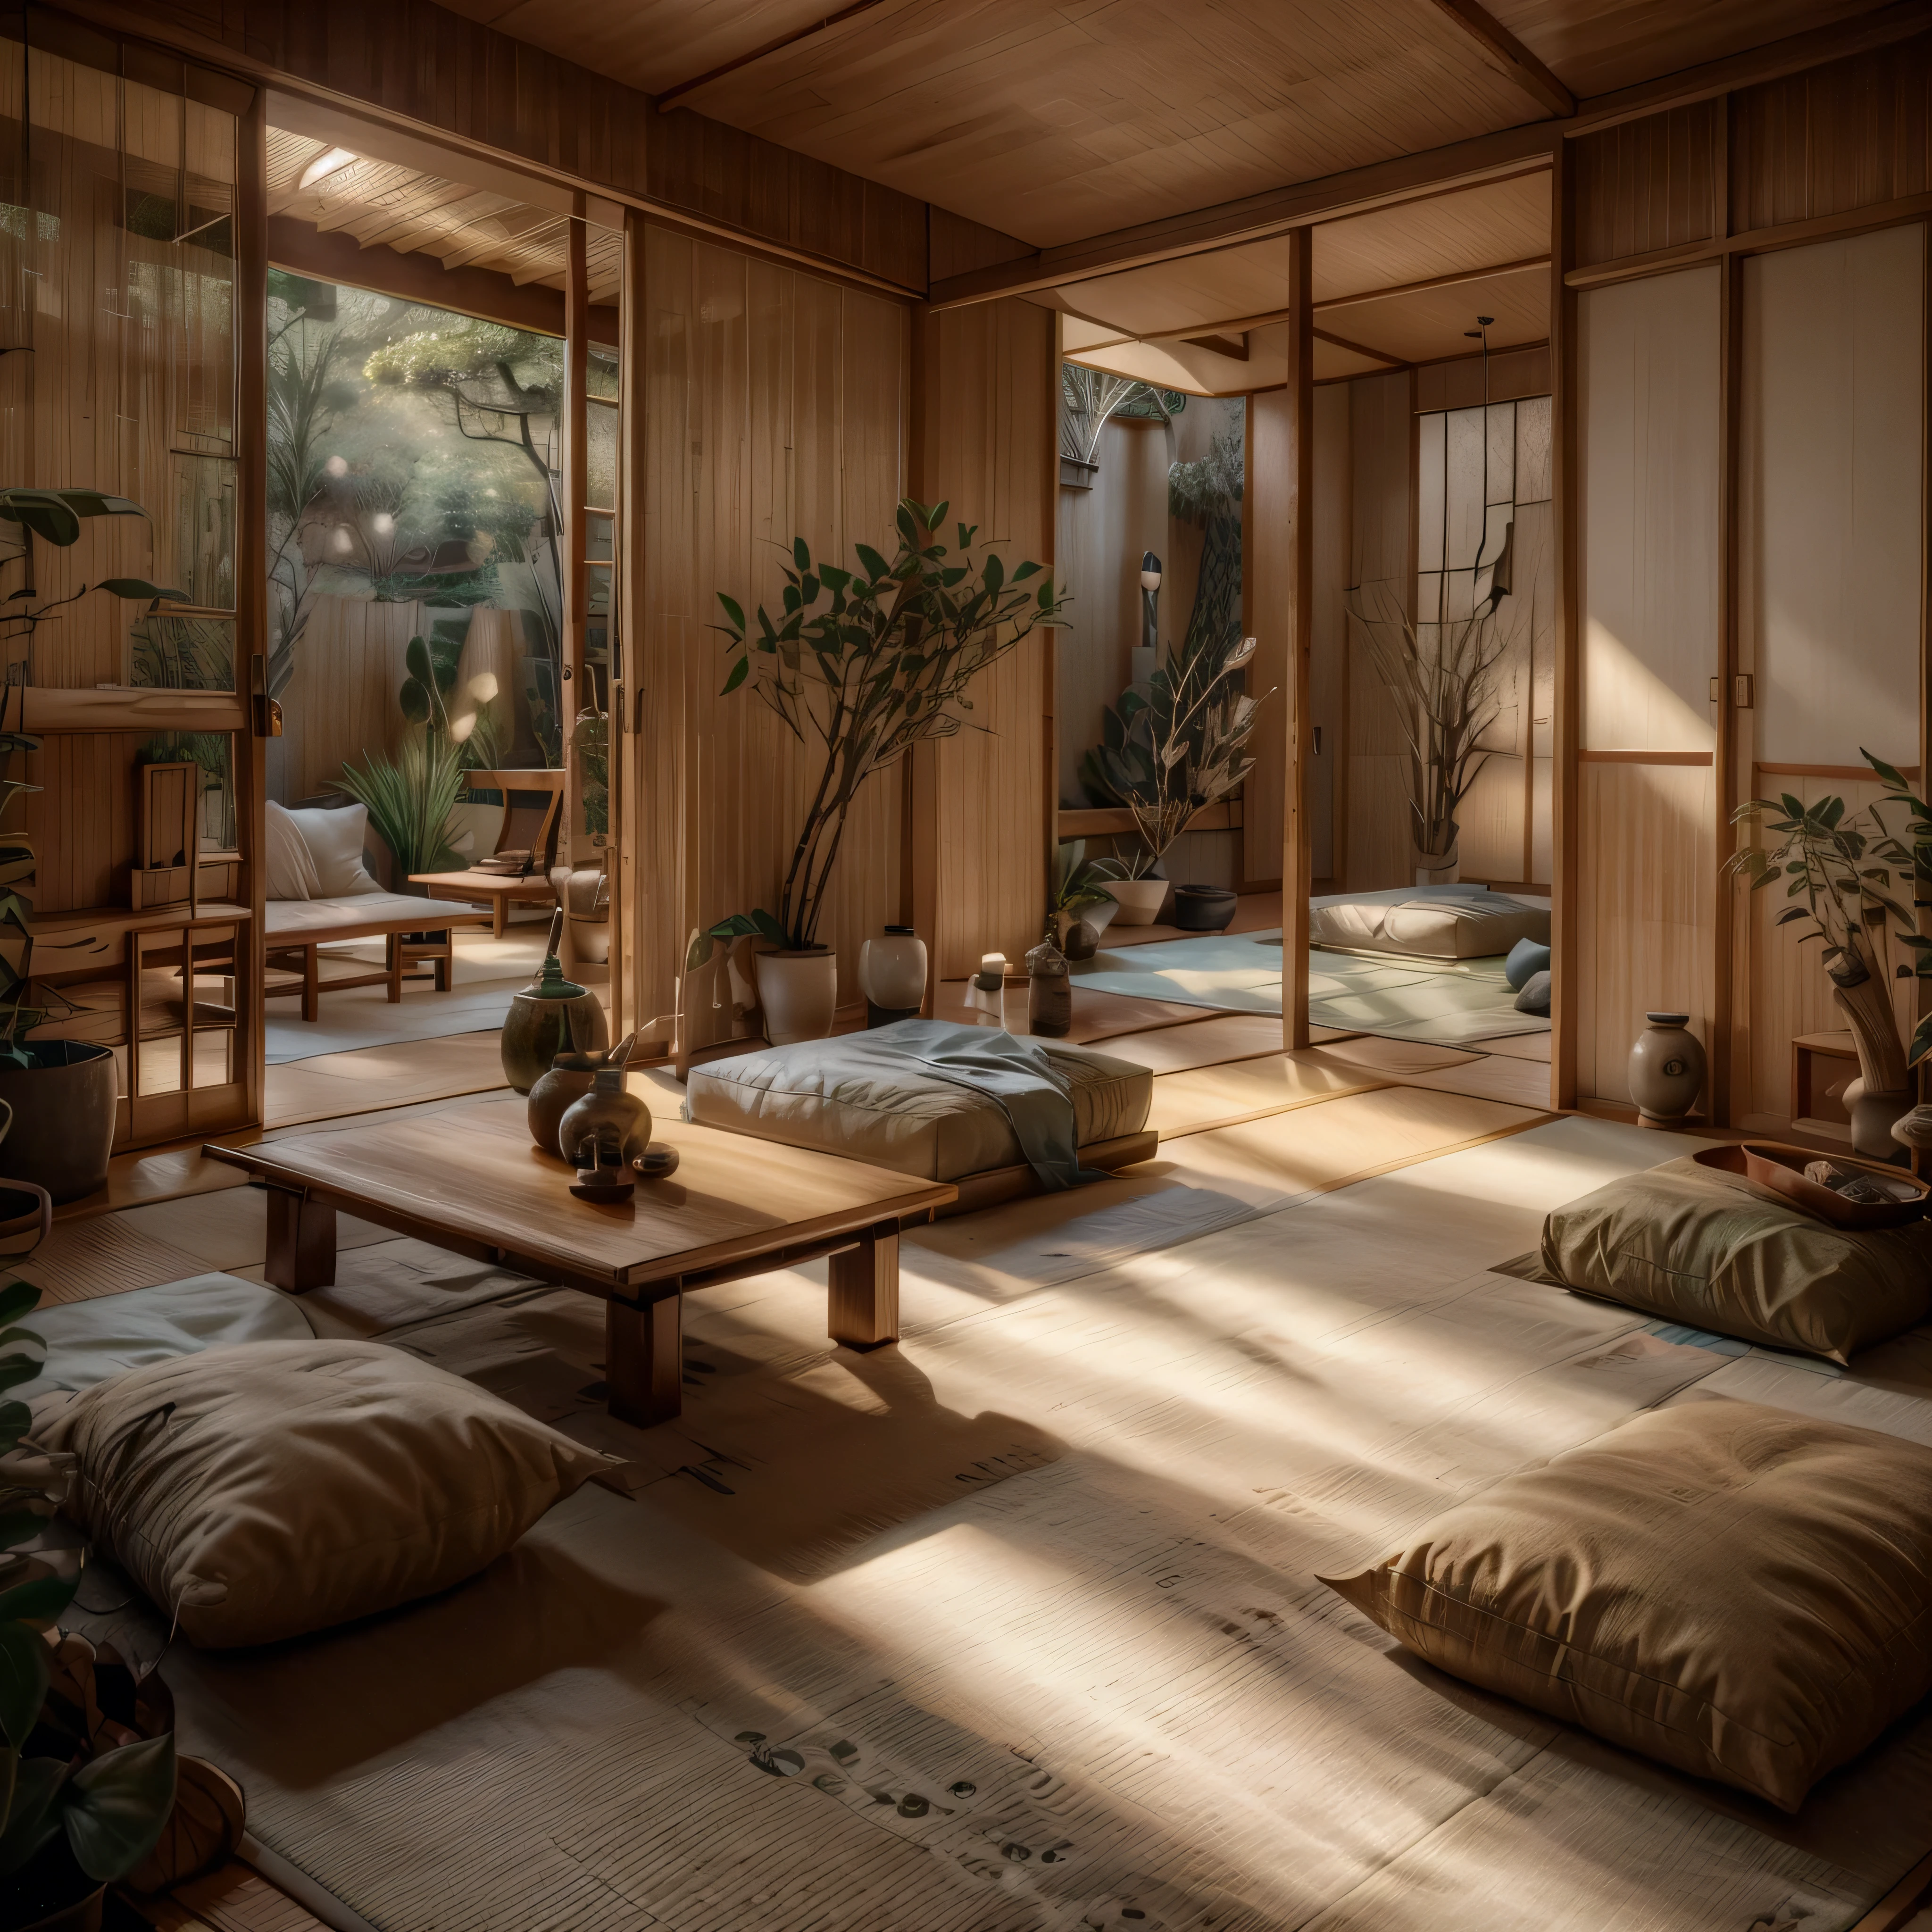 Um quarto sereno inspirado no design japonês com tatames, telas shoji, e mobiliário mínimo. Enfatize os materiais naturais com uma mesa baixa de madeira, almofadas de chão, e uma cama futon. Adicione uma planta de bambu, uma fonte de água de pedra, e um pequeno, santuário simples para meditação.